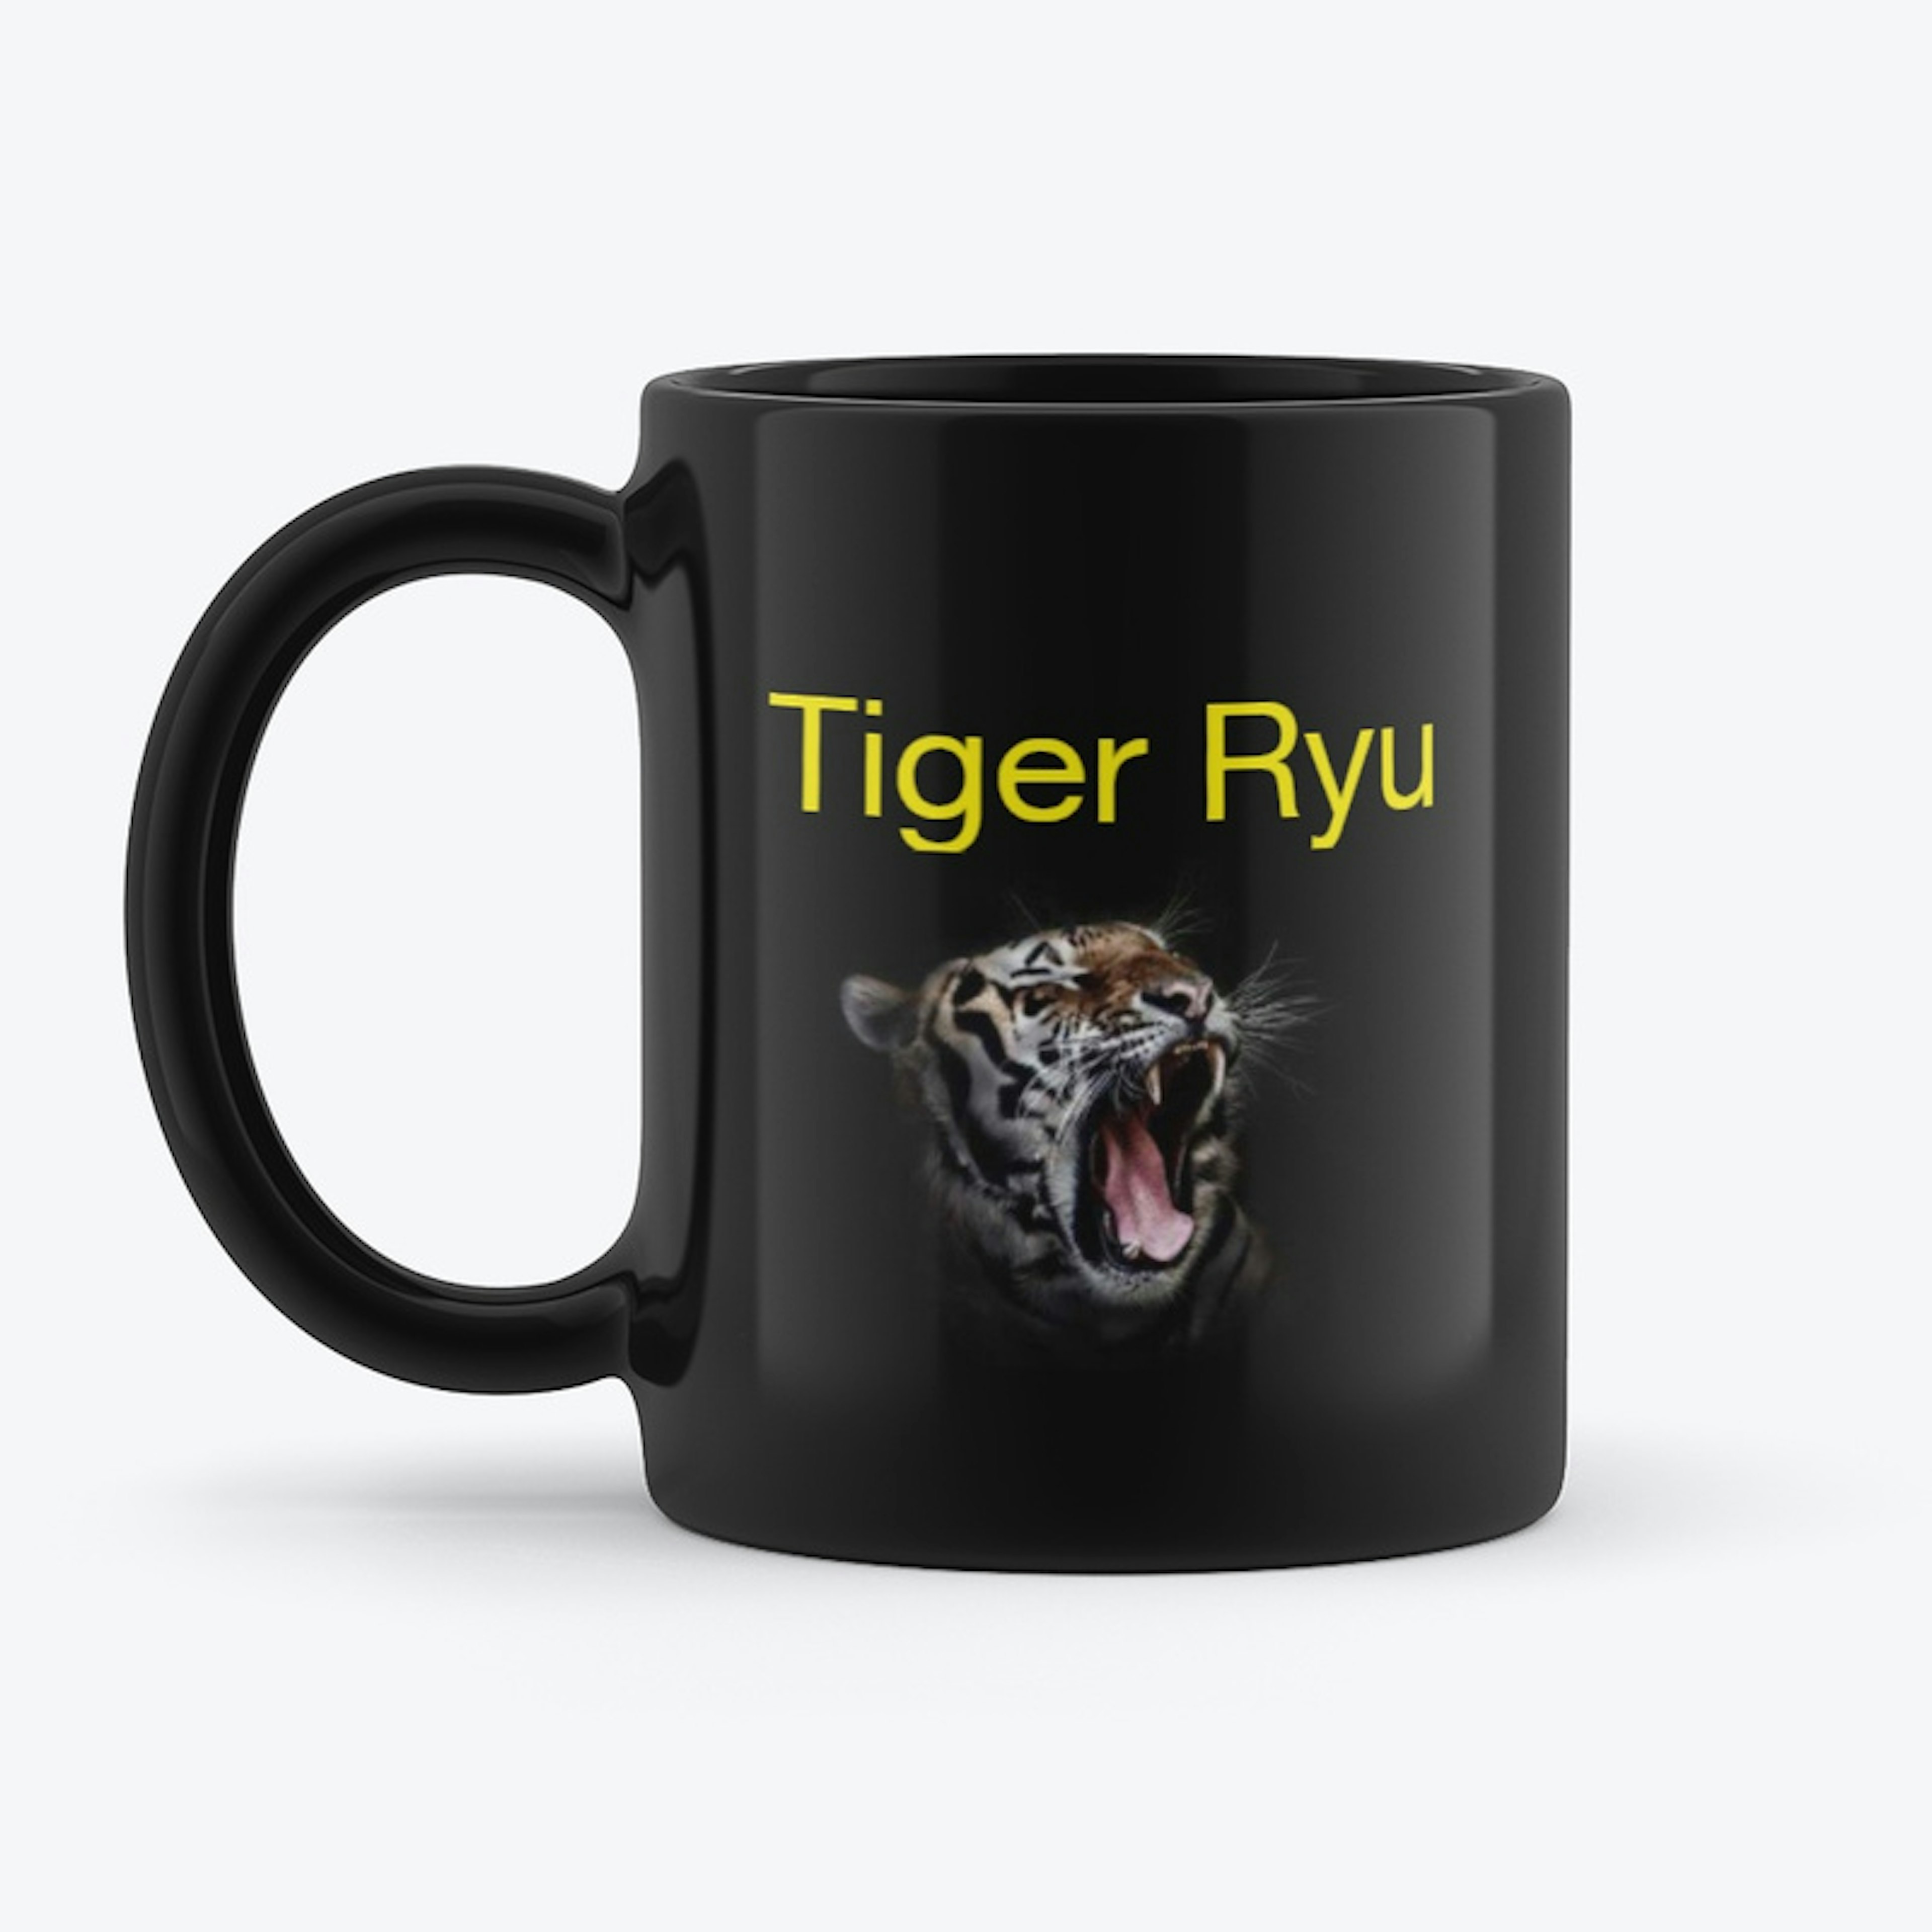 Tiger Ryu Mug